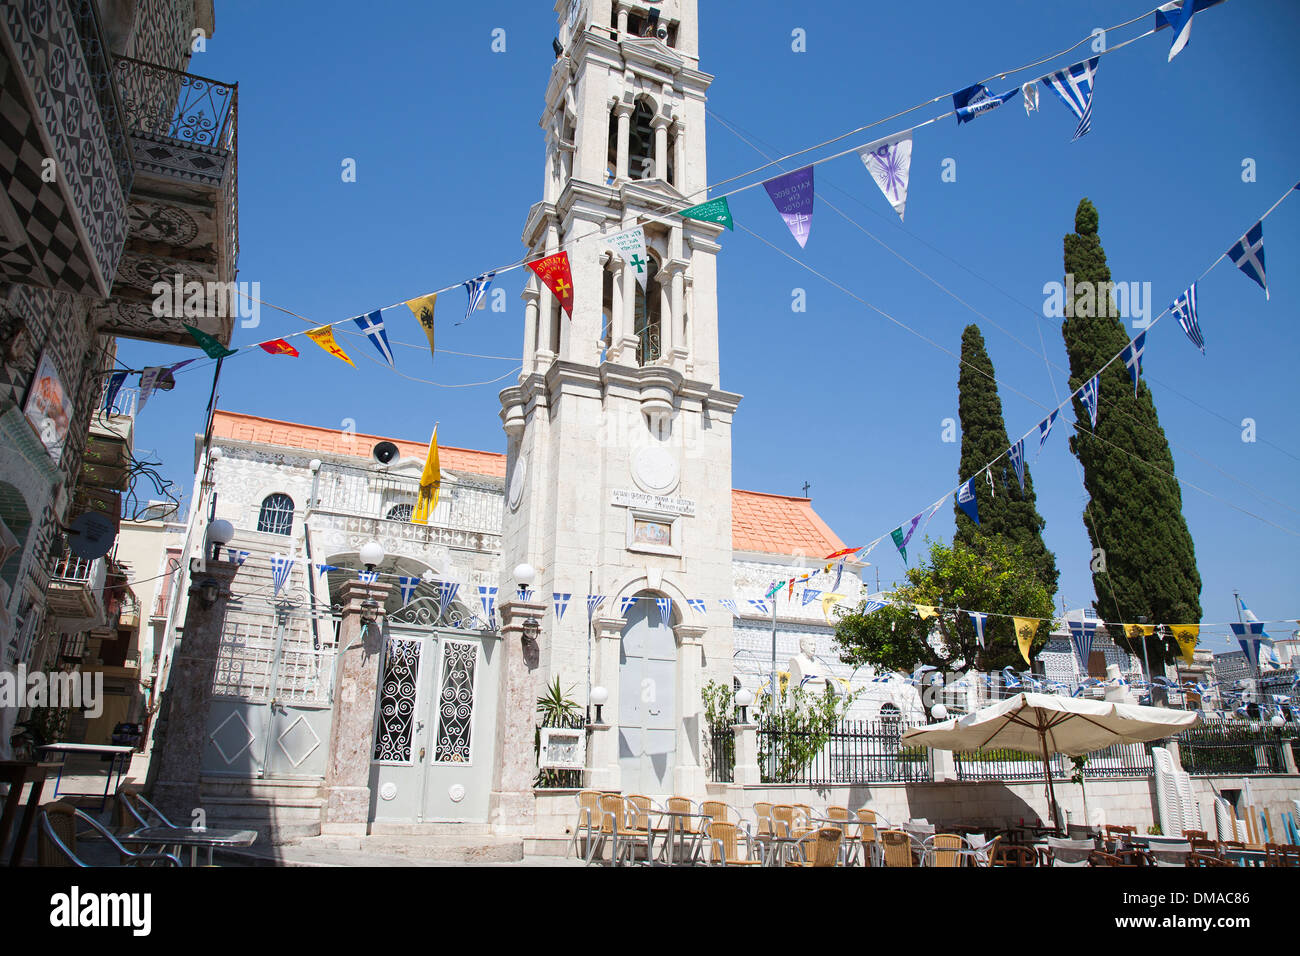 Square, église, village de Pyrgi, île de Chios, du nord-est de la mer Égée, Grèce, Europe Banque D'Images